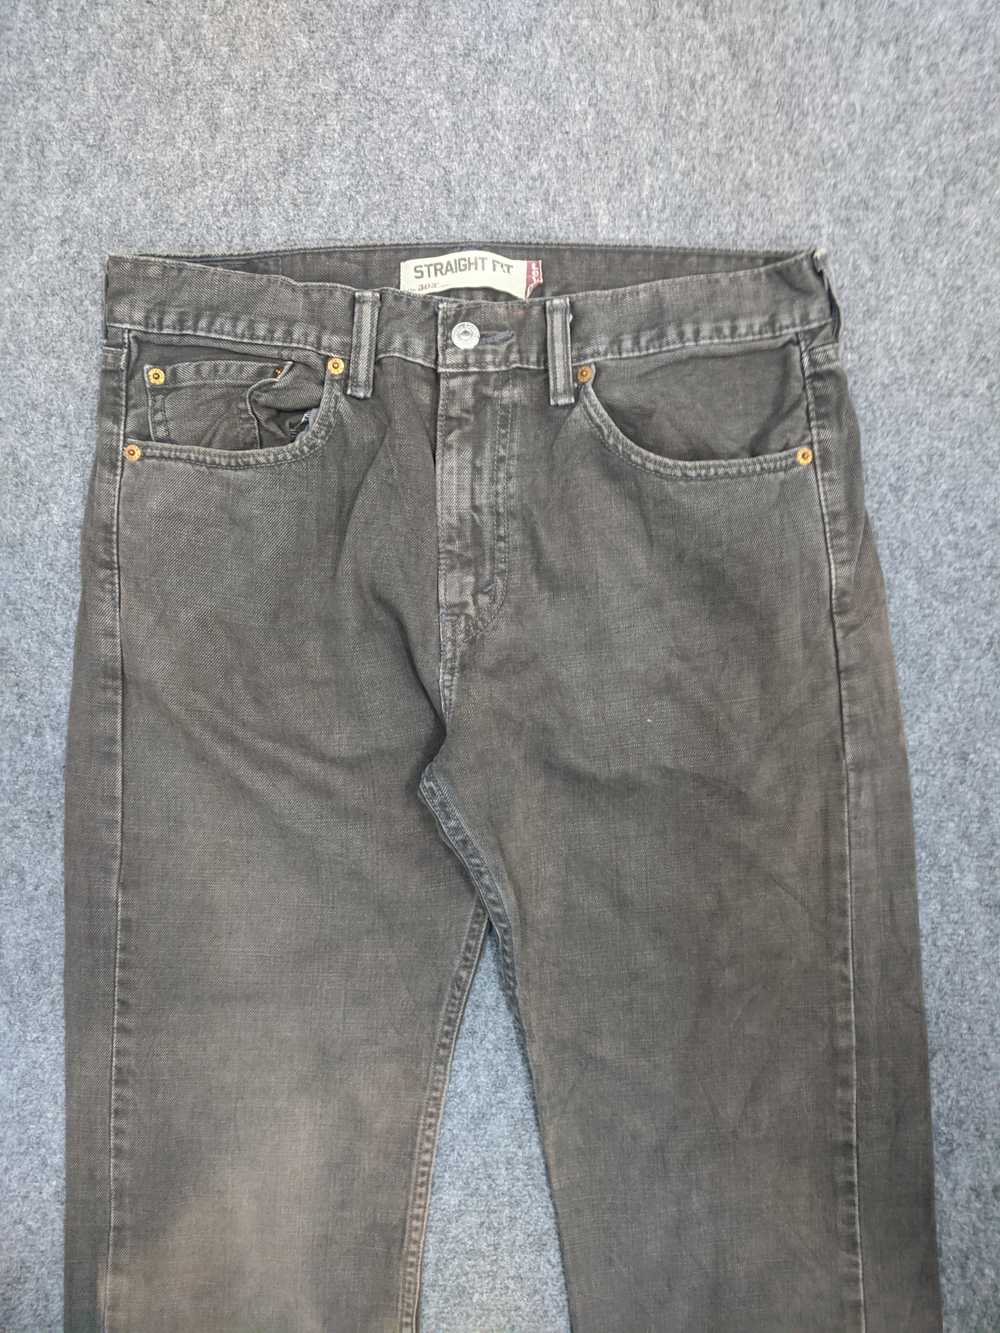 Vintage - Vintage Levis 505 Light Wash Jeans - image 2